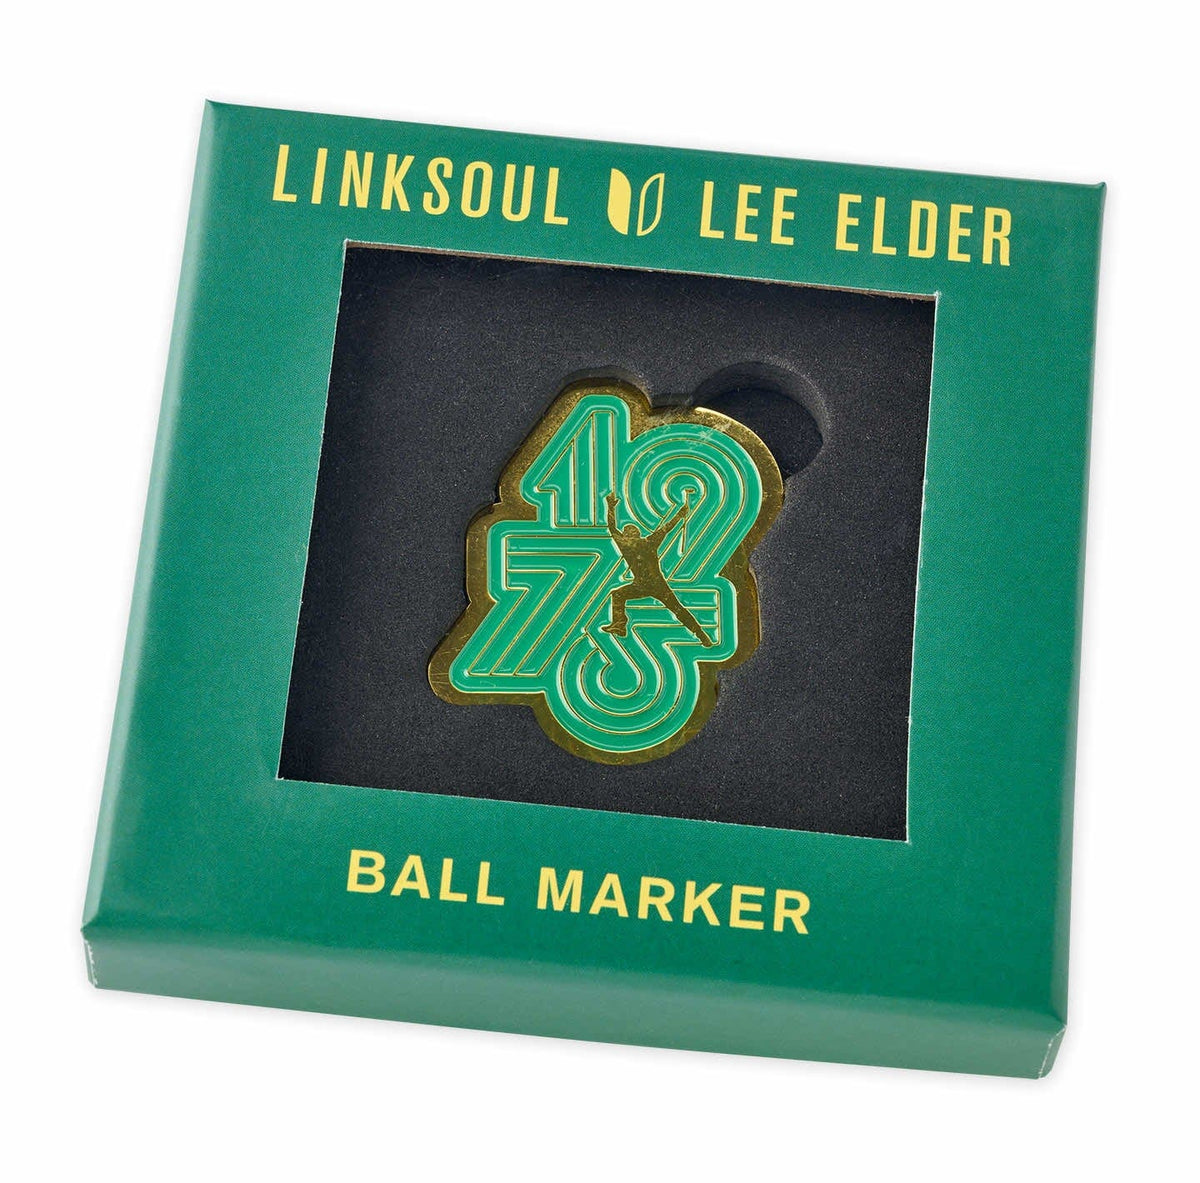 Lee Elder x LINKSOUL Charity Ball Marker